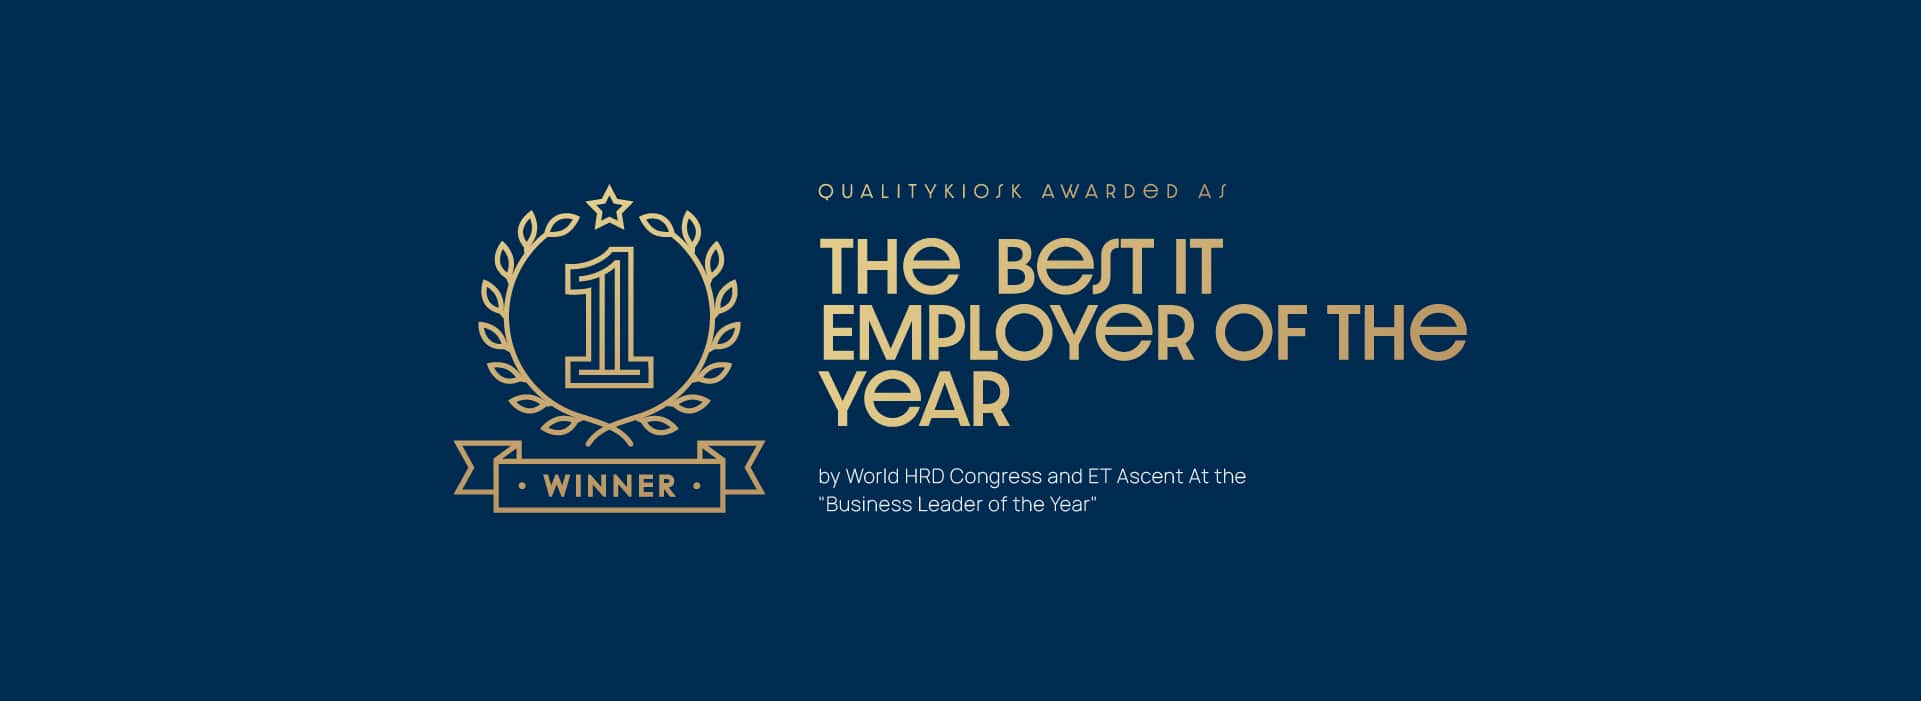 Best-IT-Employer-of-the-Year_website-min